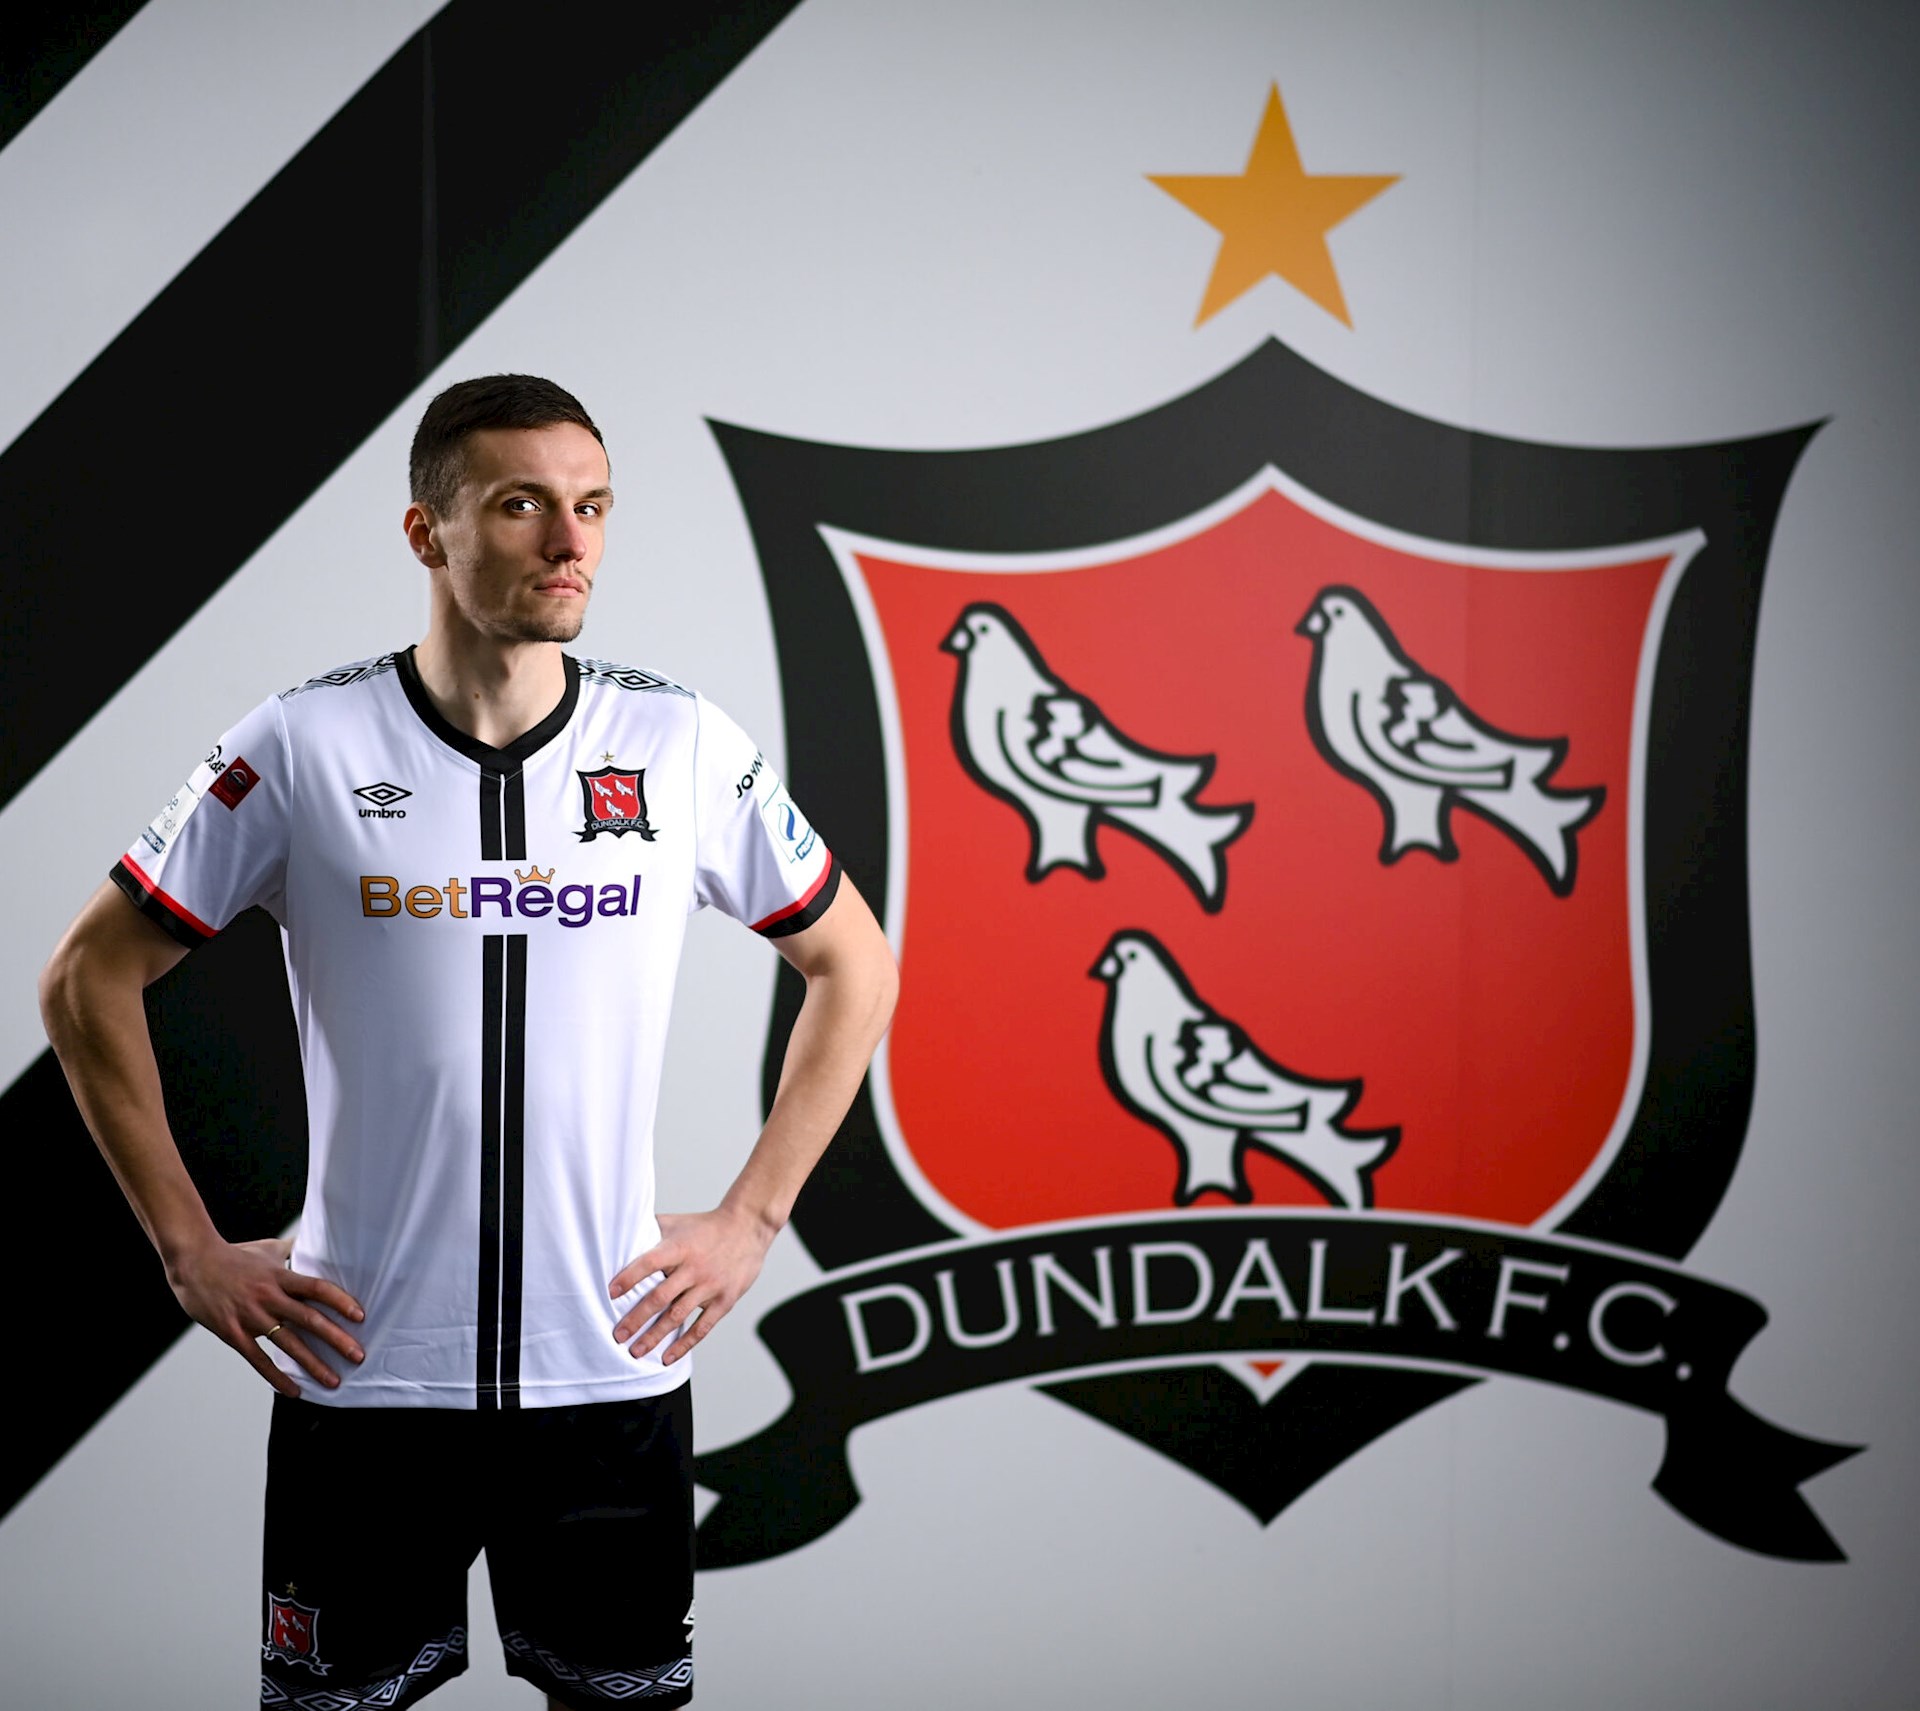 Dundalk FC thuisshirt 2021-2022